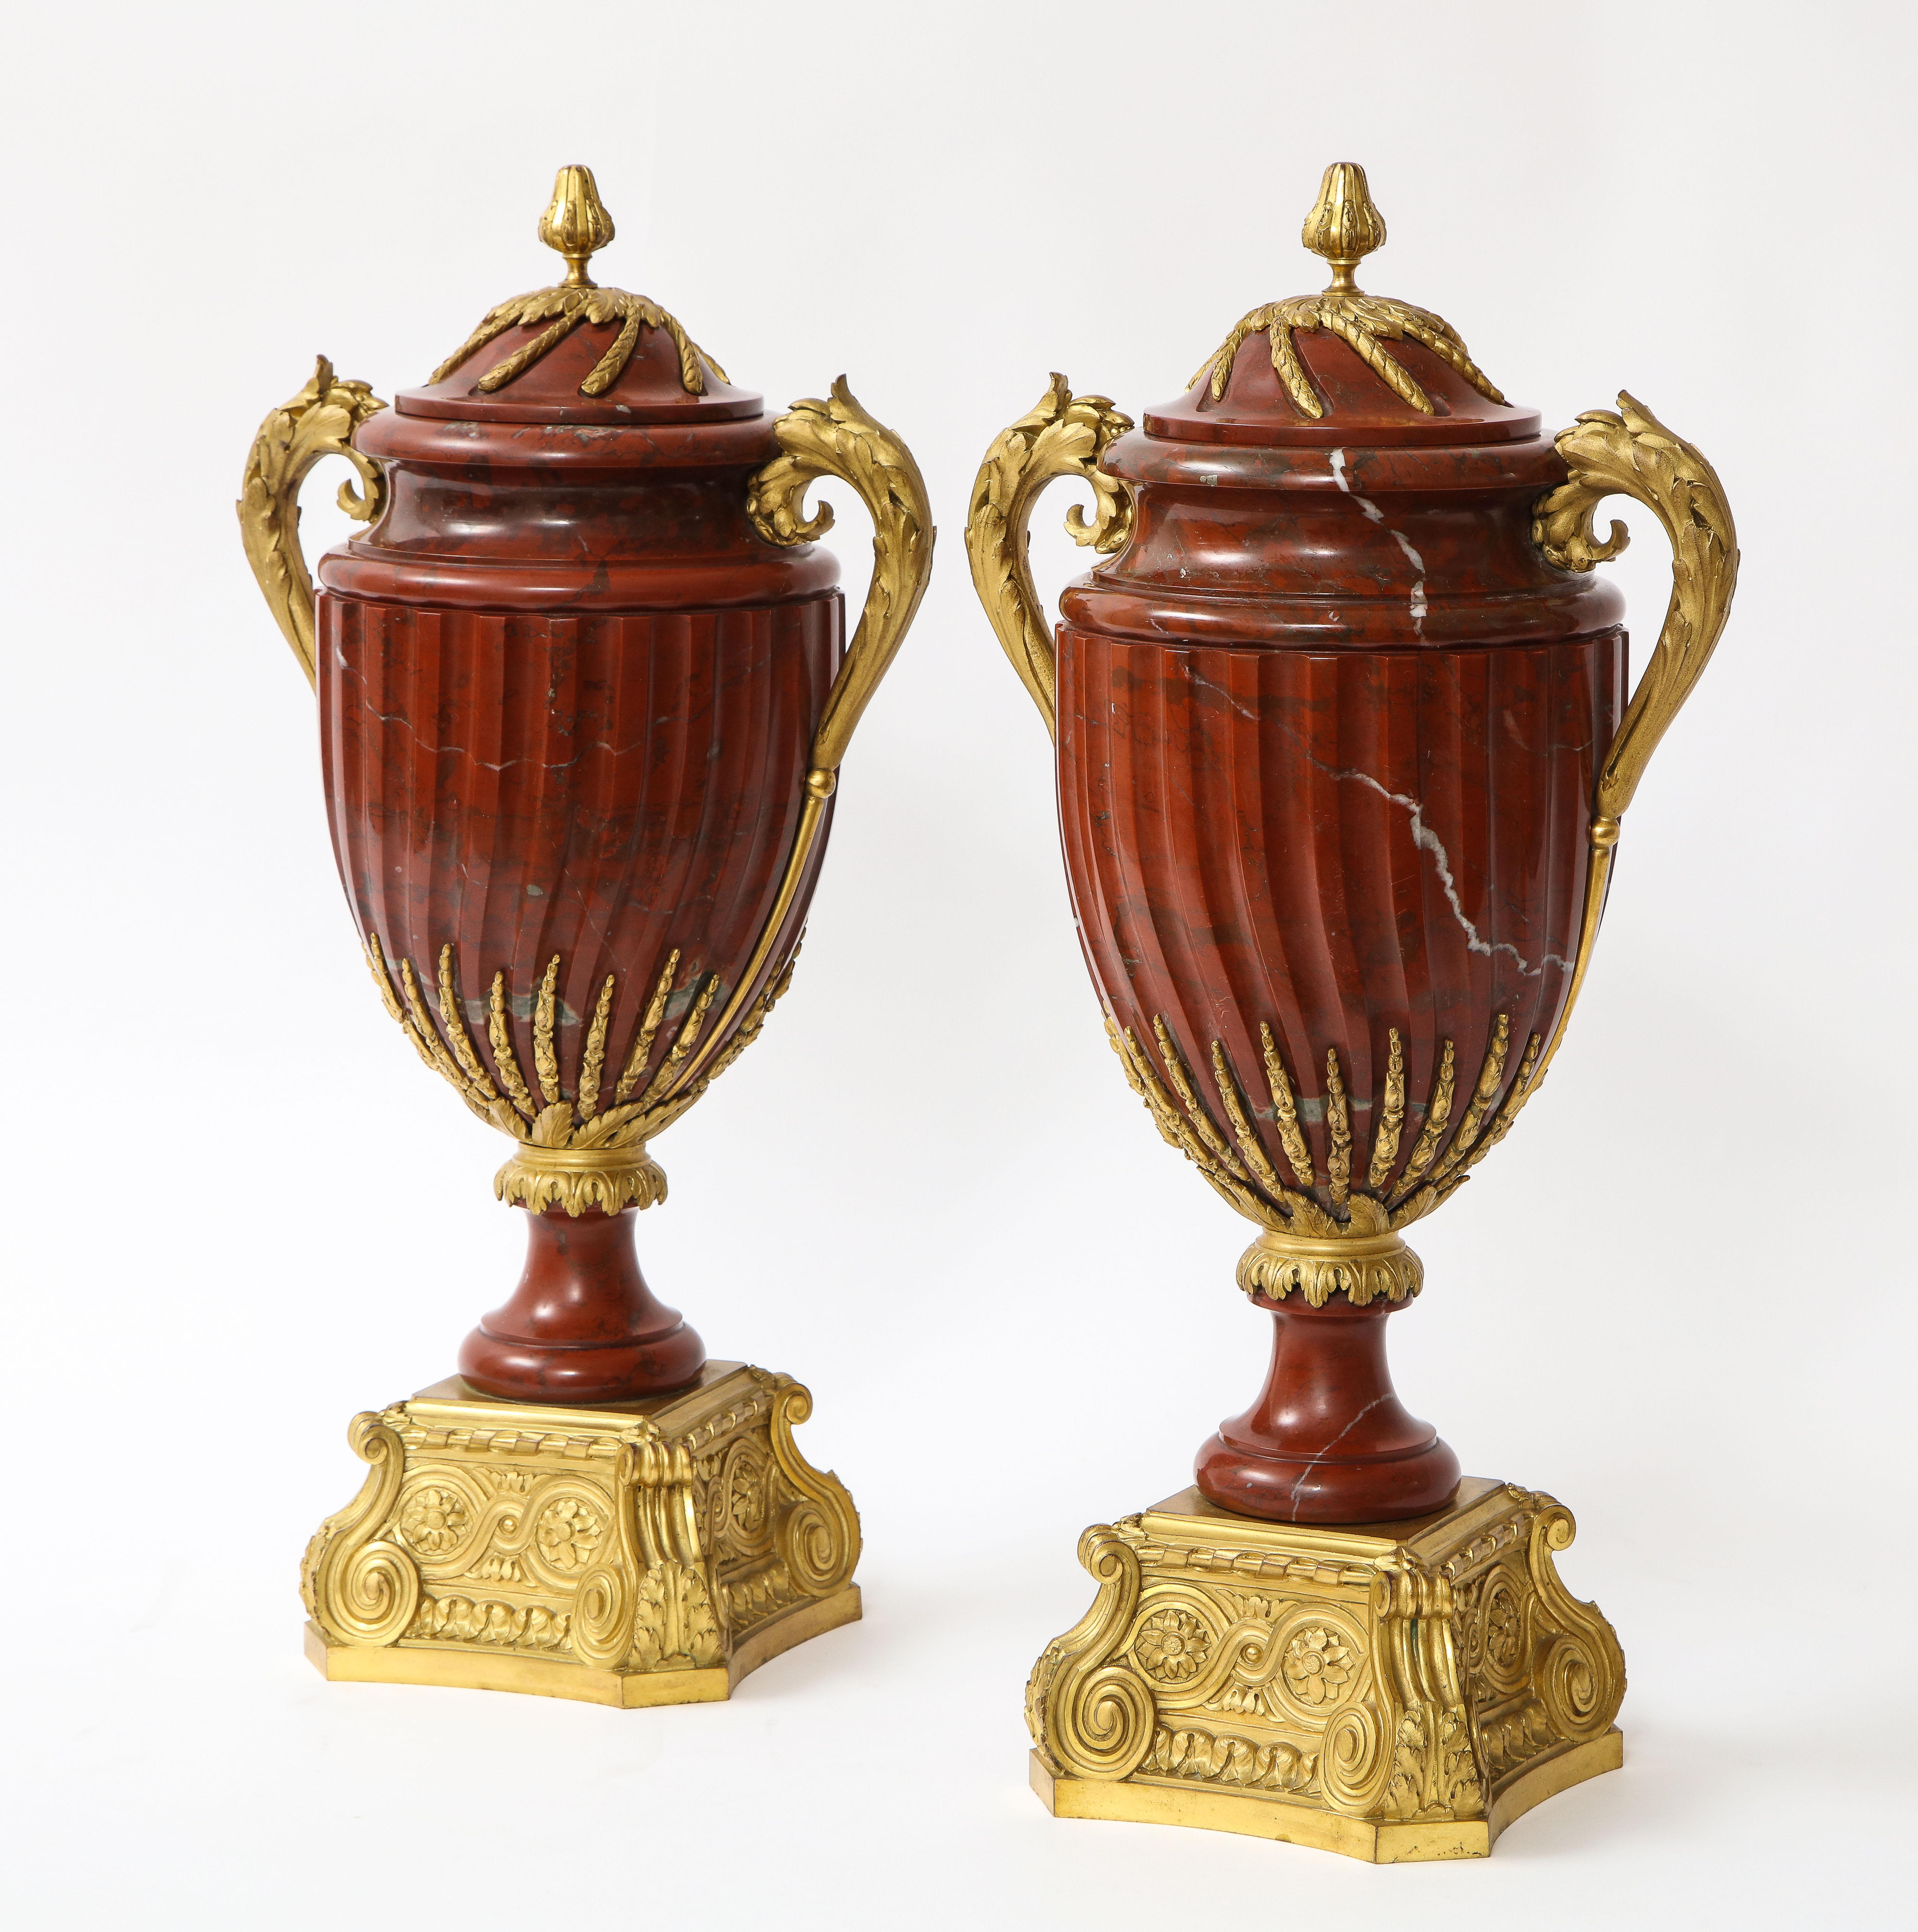 Paire de vases couverts en marbre rouge montés en bronze doré, de style Louis XVI du XIXe siècle, signés MAISON BOUDET. Chacun de forme balustre, monté avec des poignées en feuilles d'acanthe en bronze doré, les couvercles avec des vignes en bronze